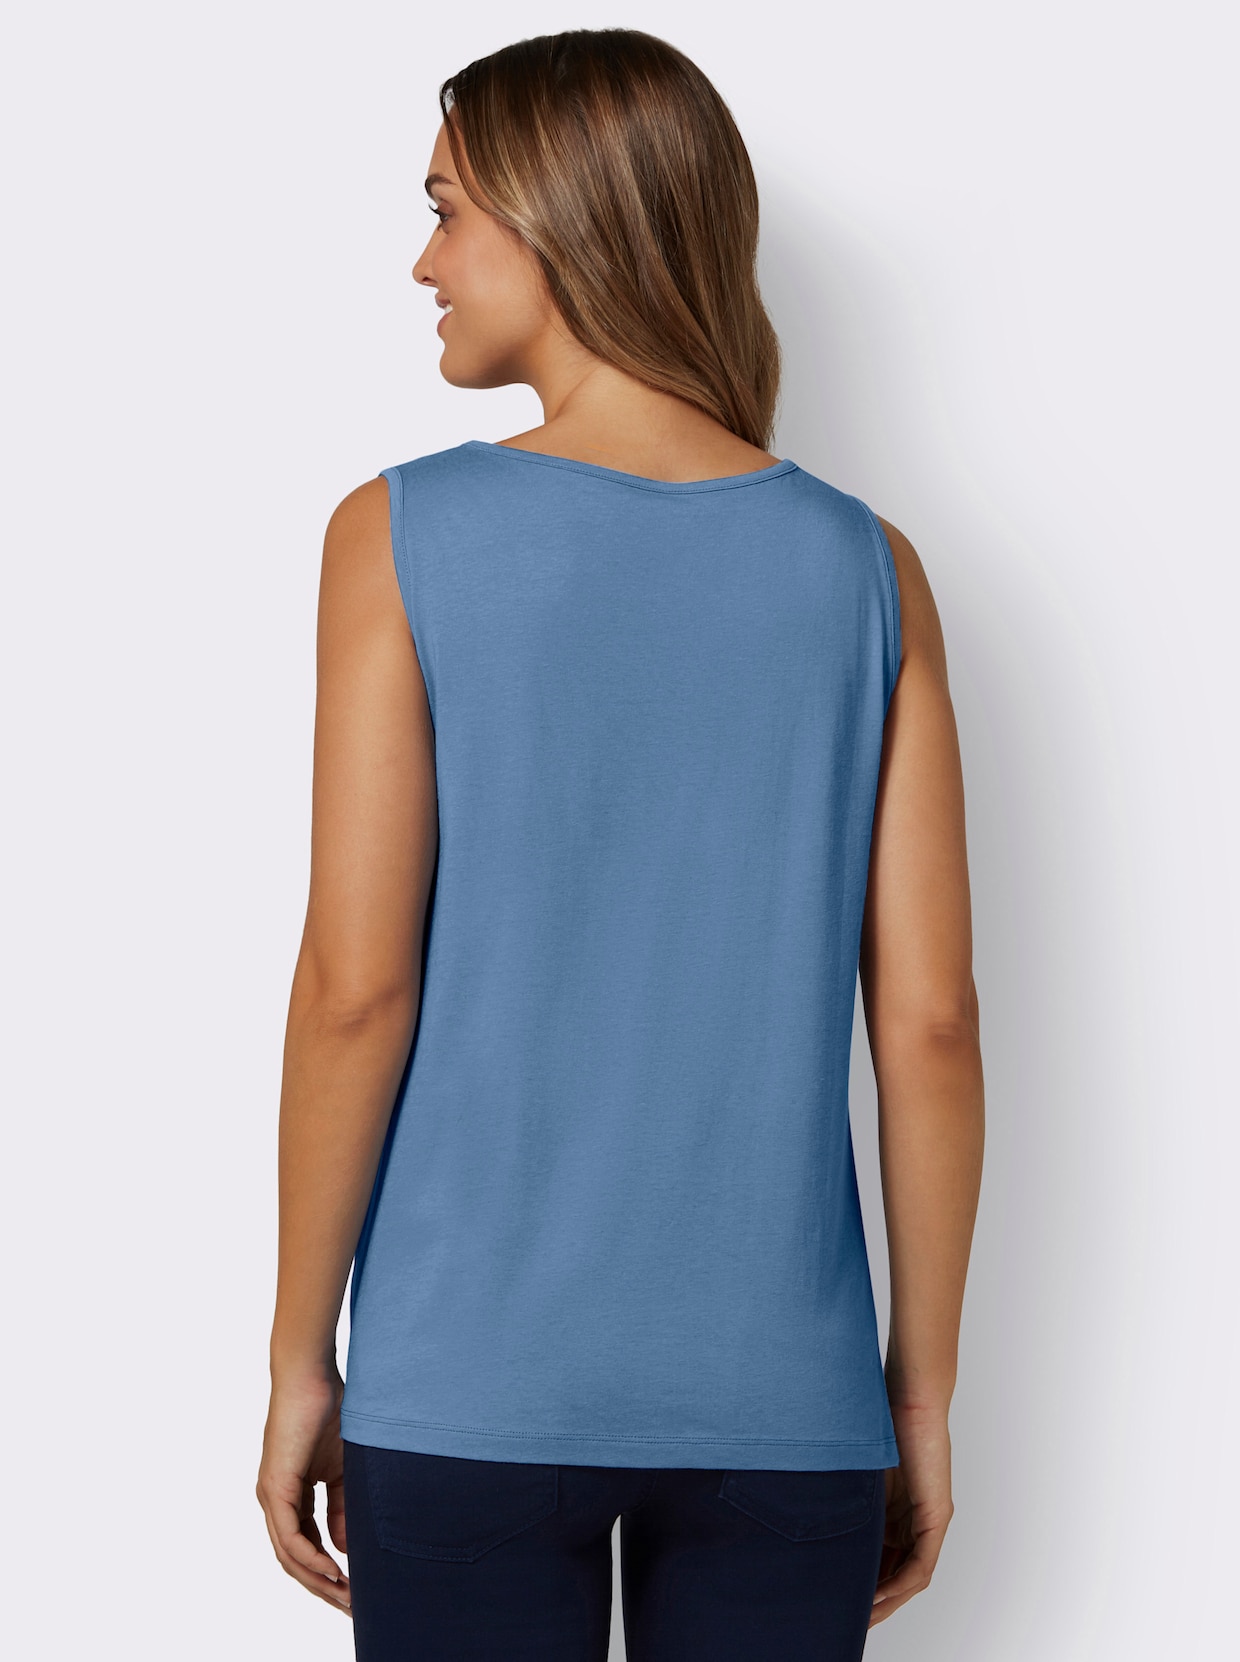 Shirttop - middelblauw/jeansblauw